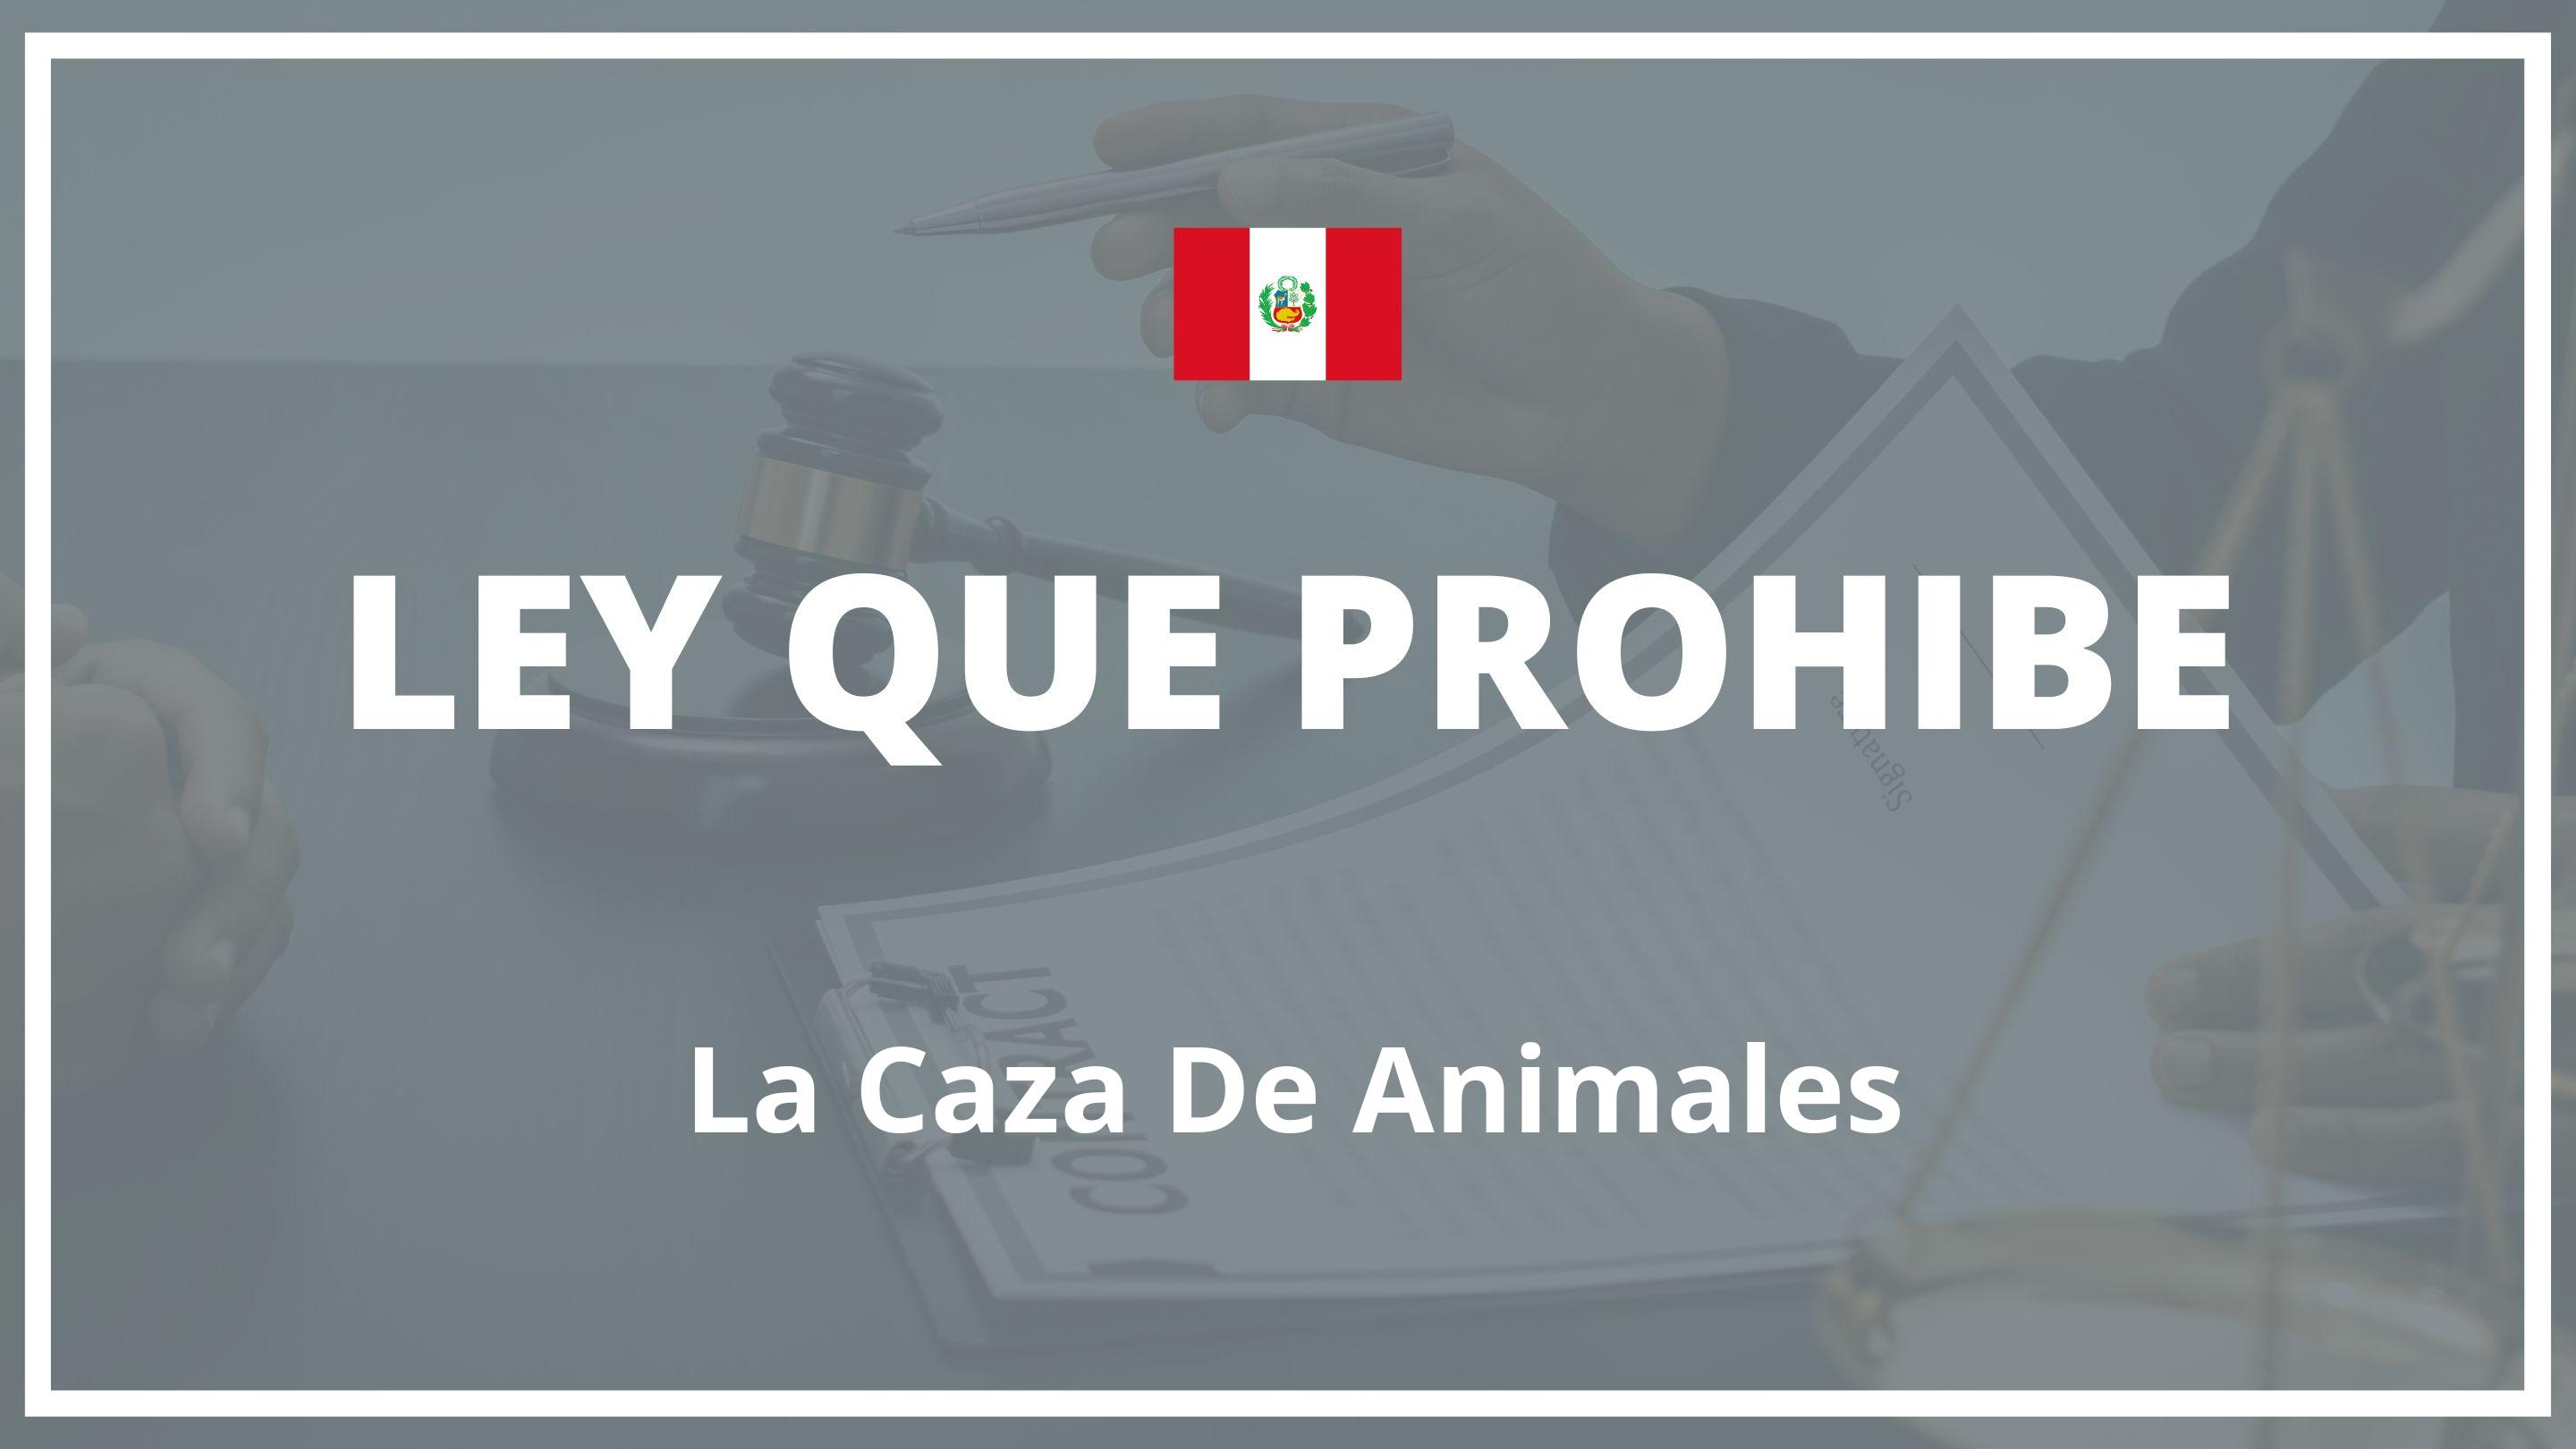 Ley que prohibe la caza de animales Peru